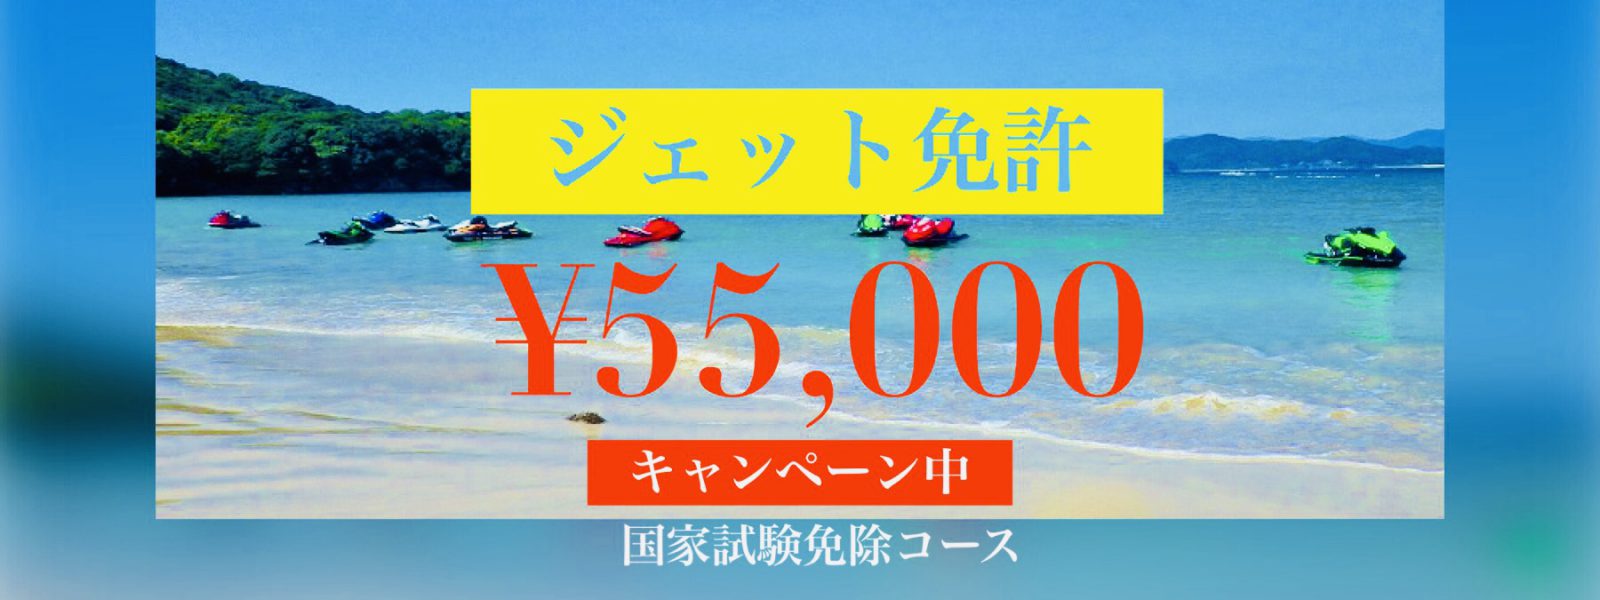 水上バイク免許5.5万円！特価キャンペーンやってます！